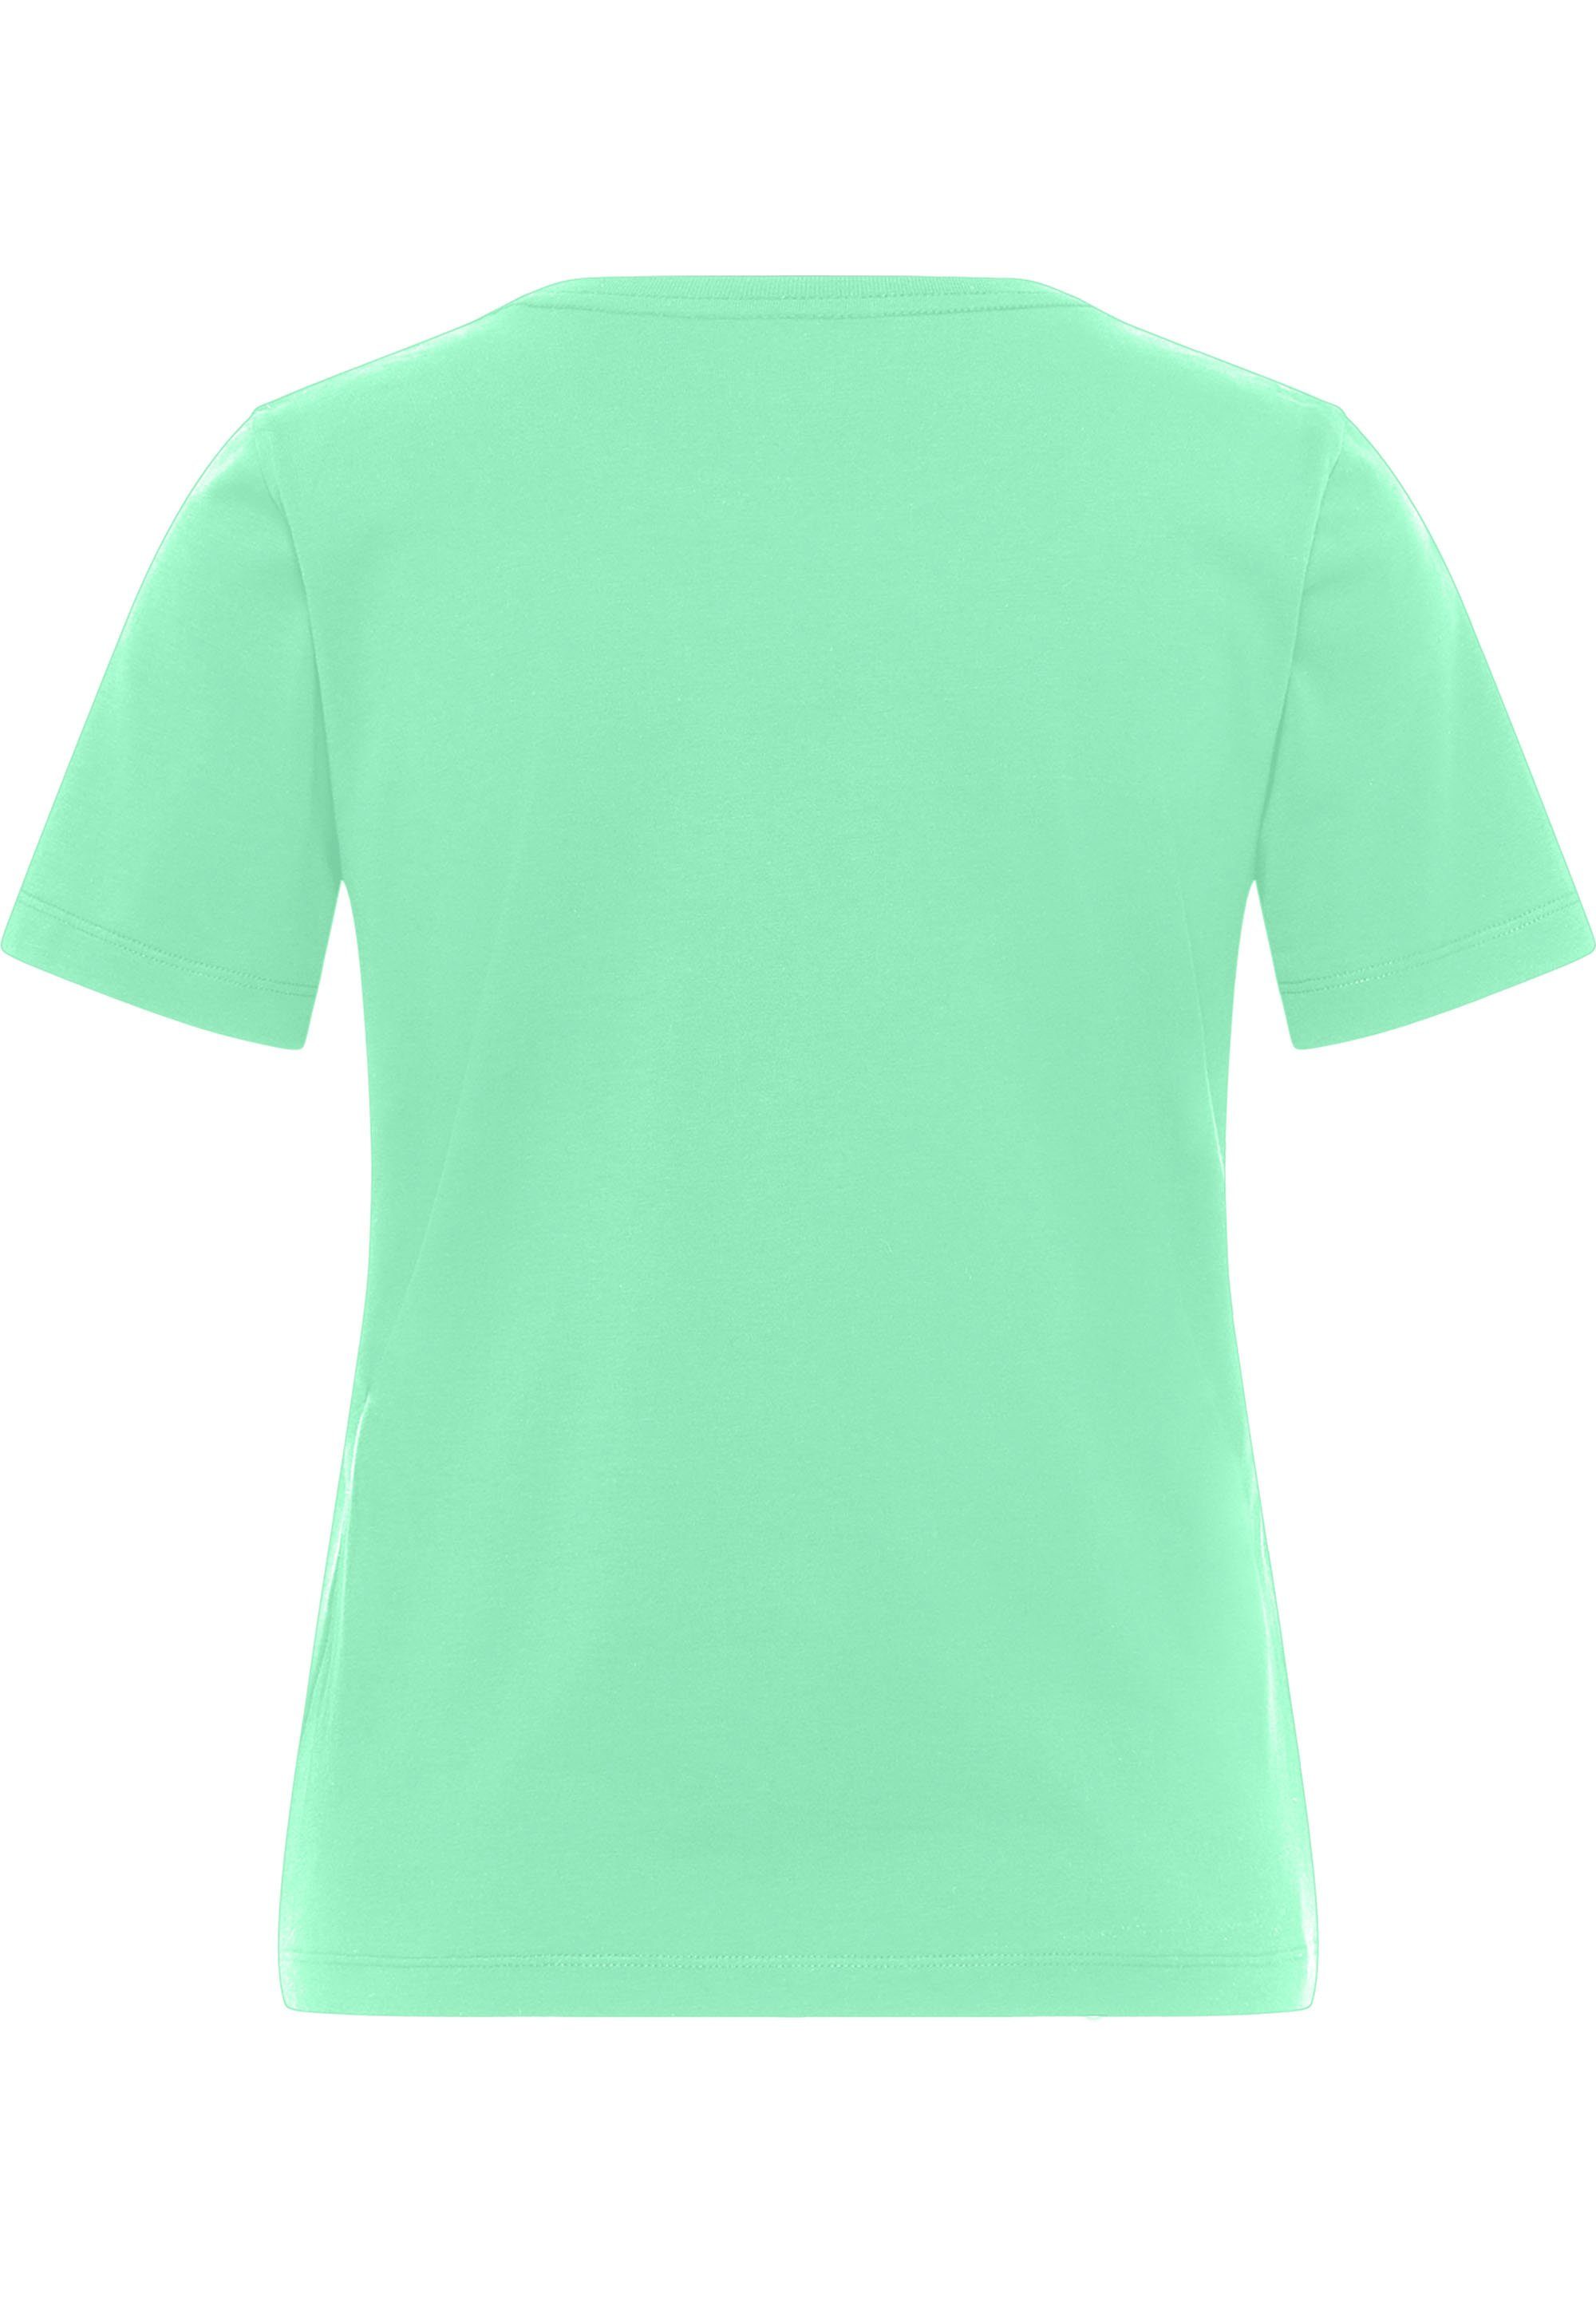 Damen Shirts SOMWR Kurzarmshirt T-Shirt With Mangrove Print 1 Mangrove gepflanzt / 1,1 kg Strand Plastik eingesammelt